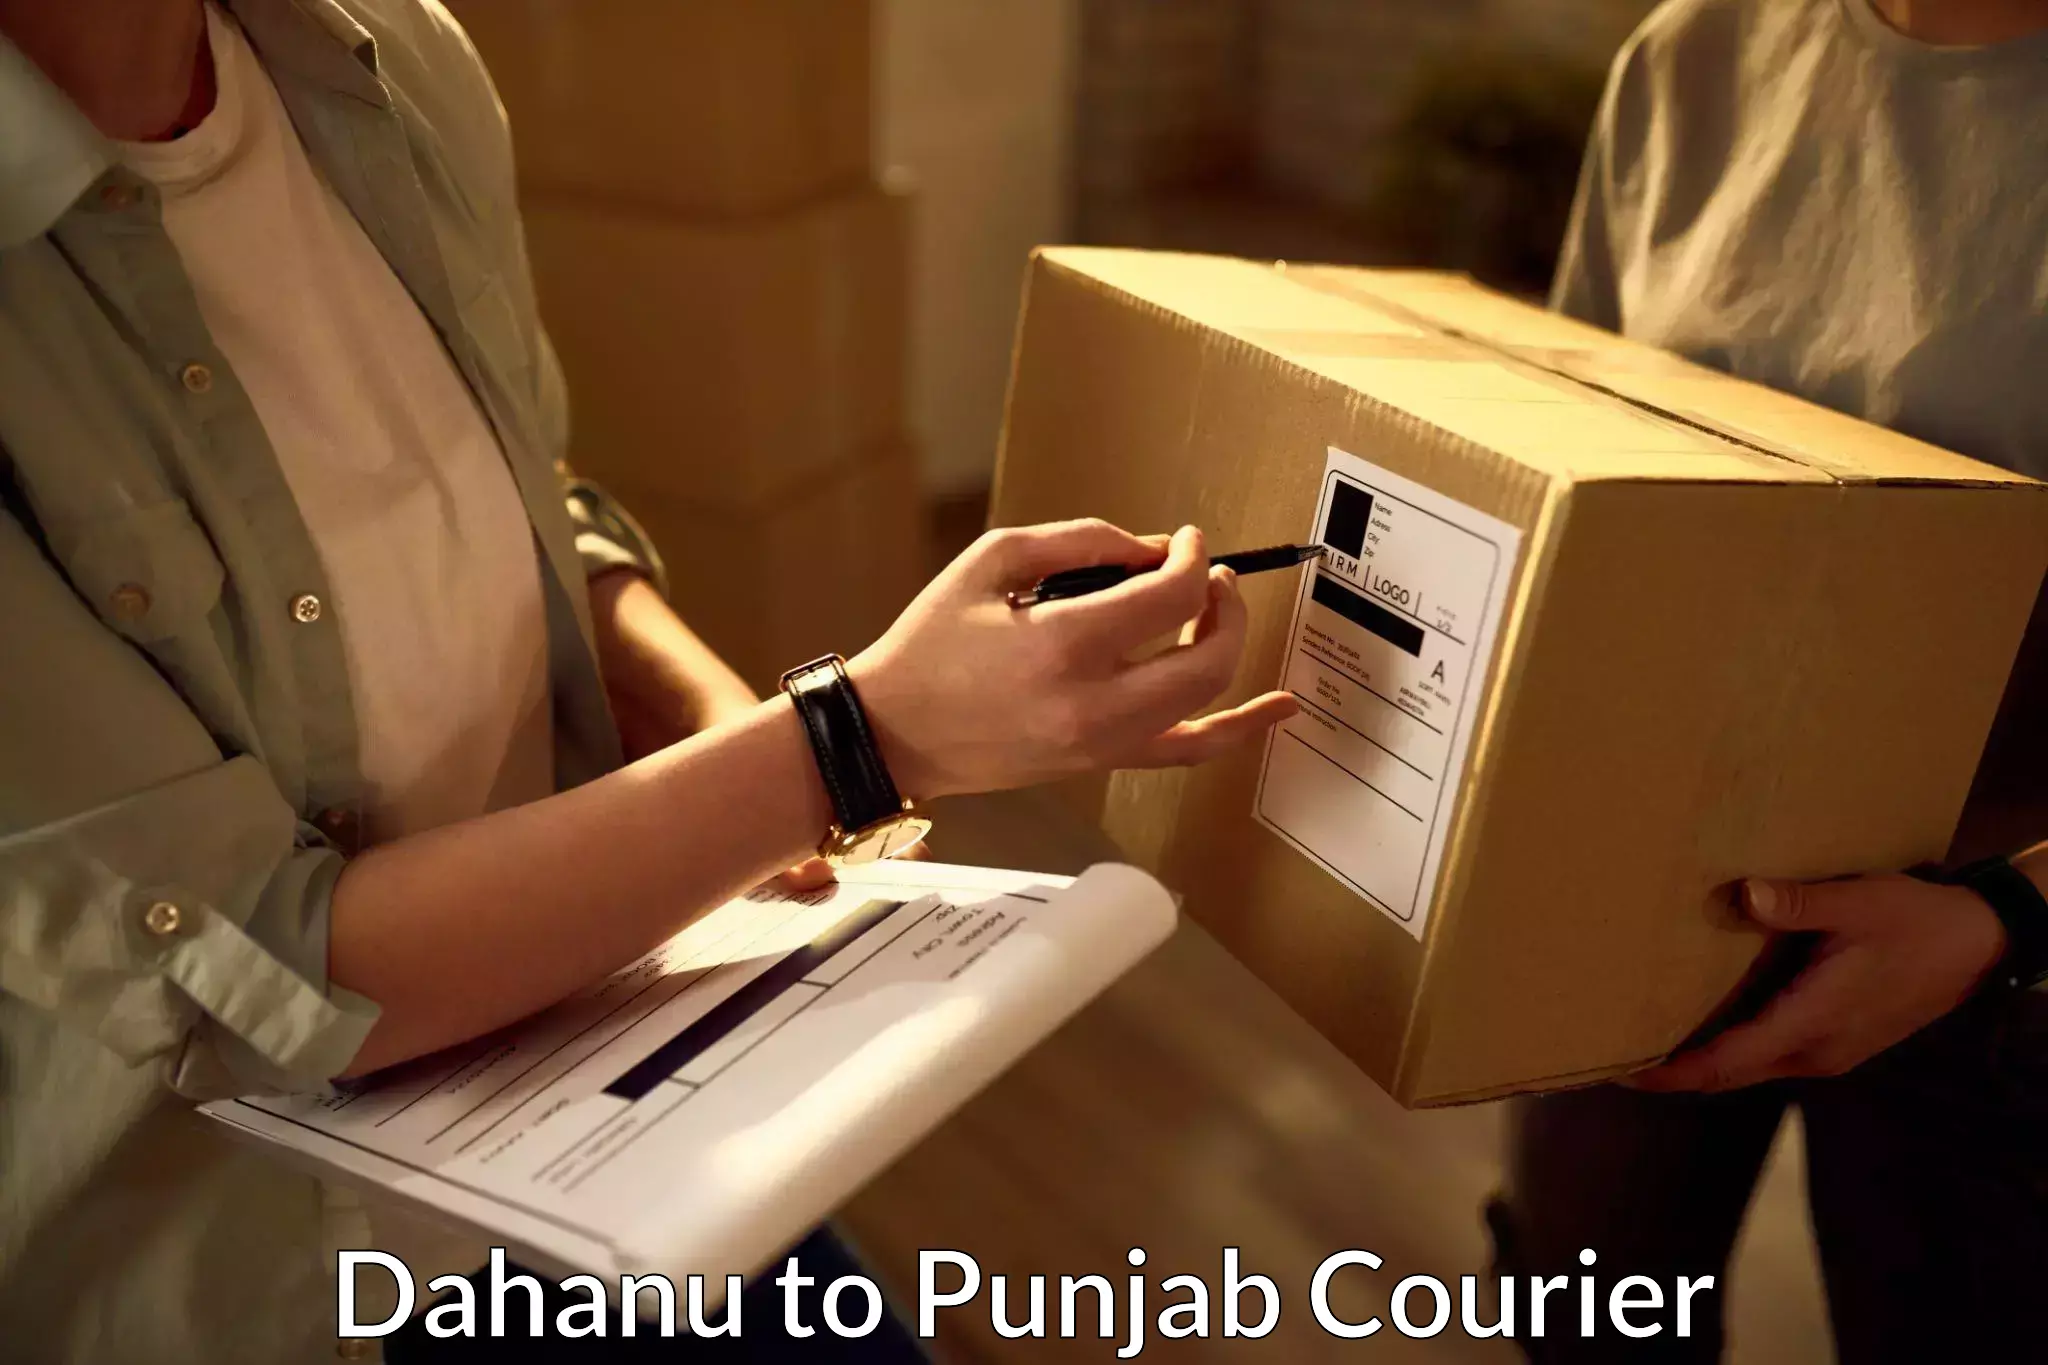 Global courier networks Dahanu to Nabha